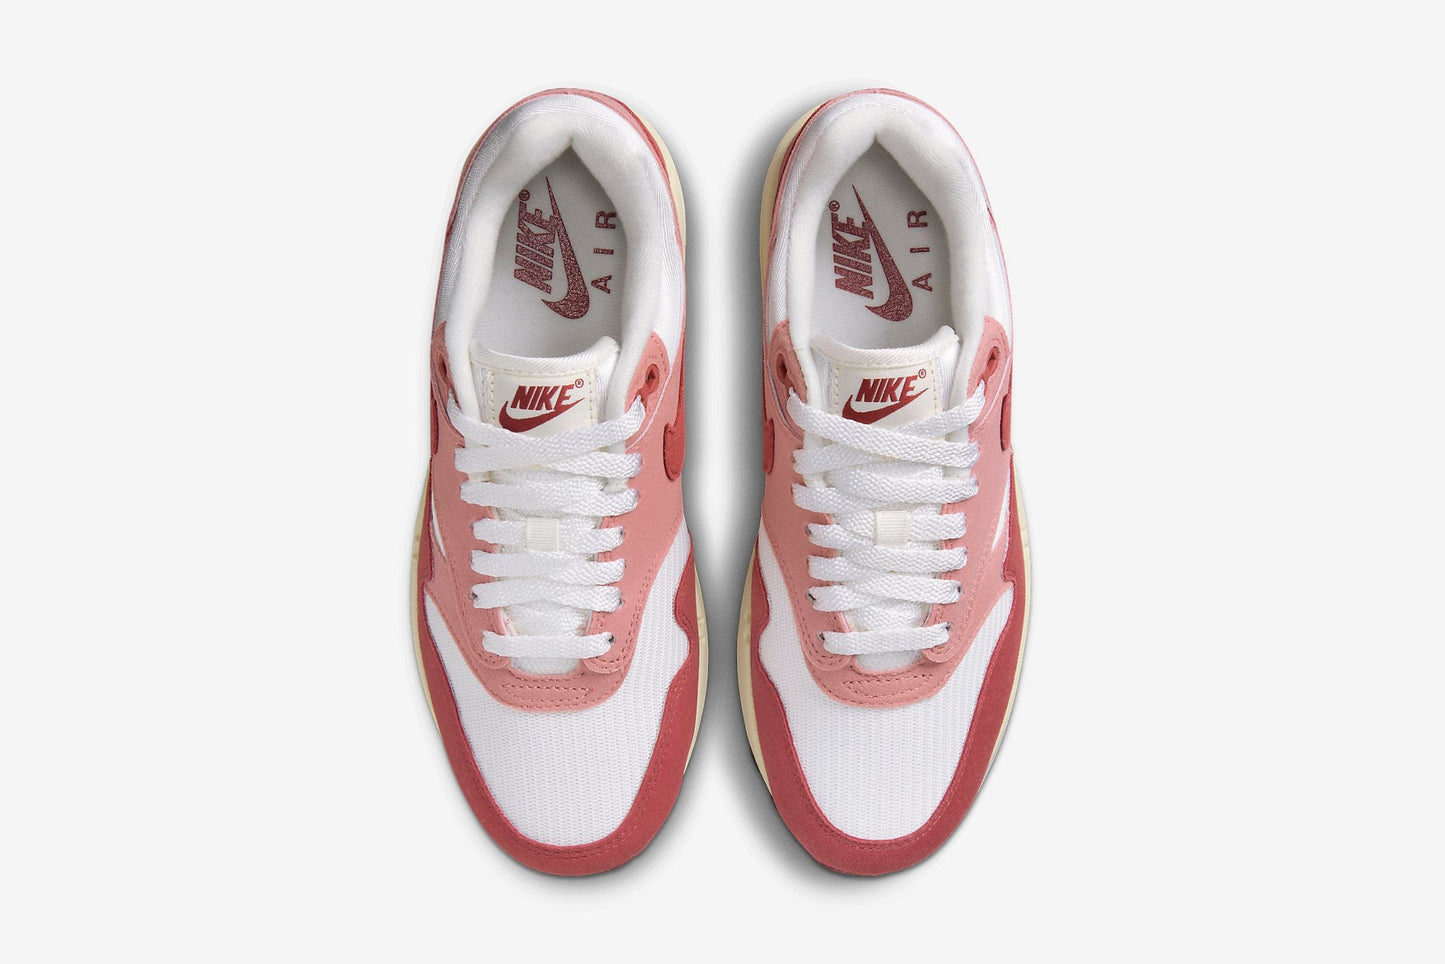 Nike "Air Max 1 " W - Sail / Cedar / Red Stardust